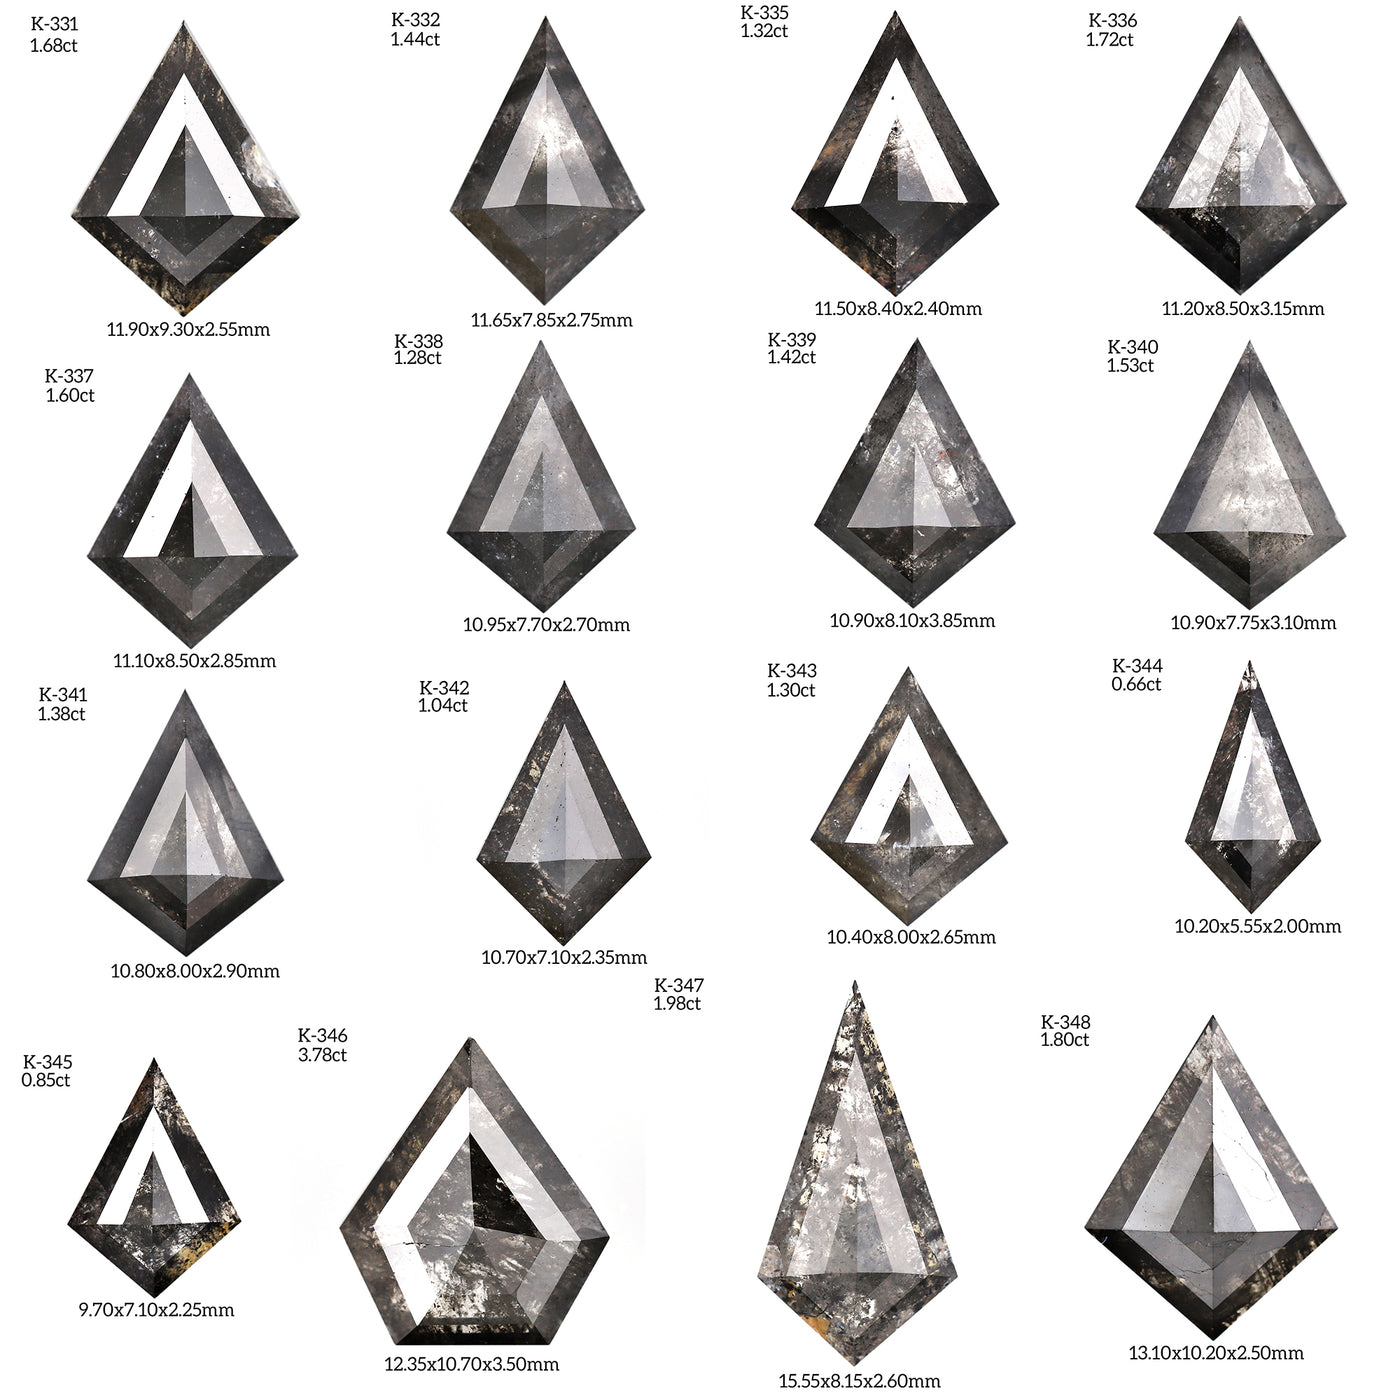 K367 - Salt and pepper kite diamond